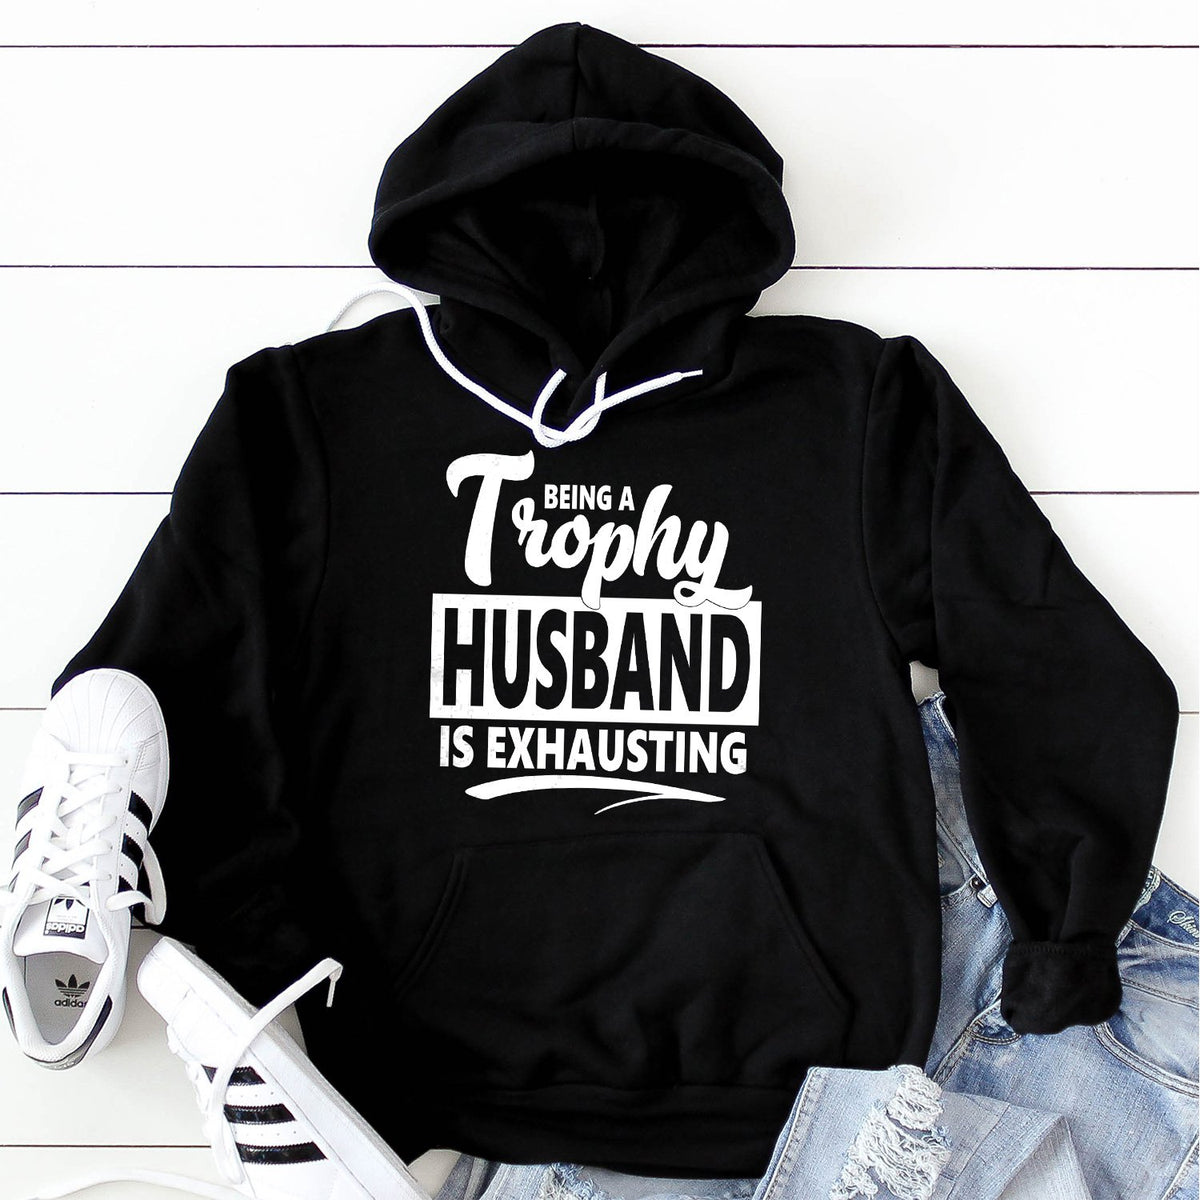 Being A Trophy Husband is Exhausting - Hoodie Sweatshirt